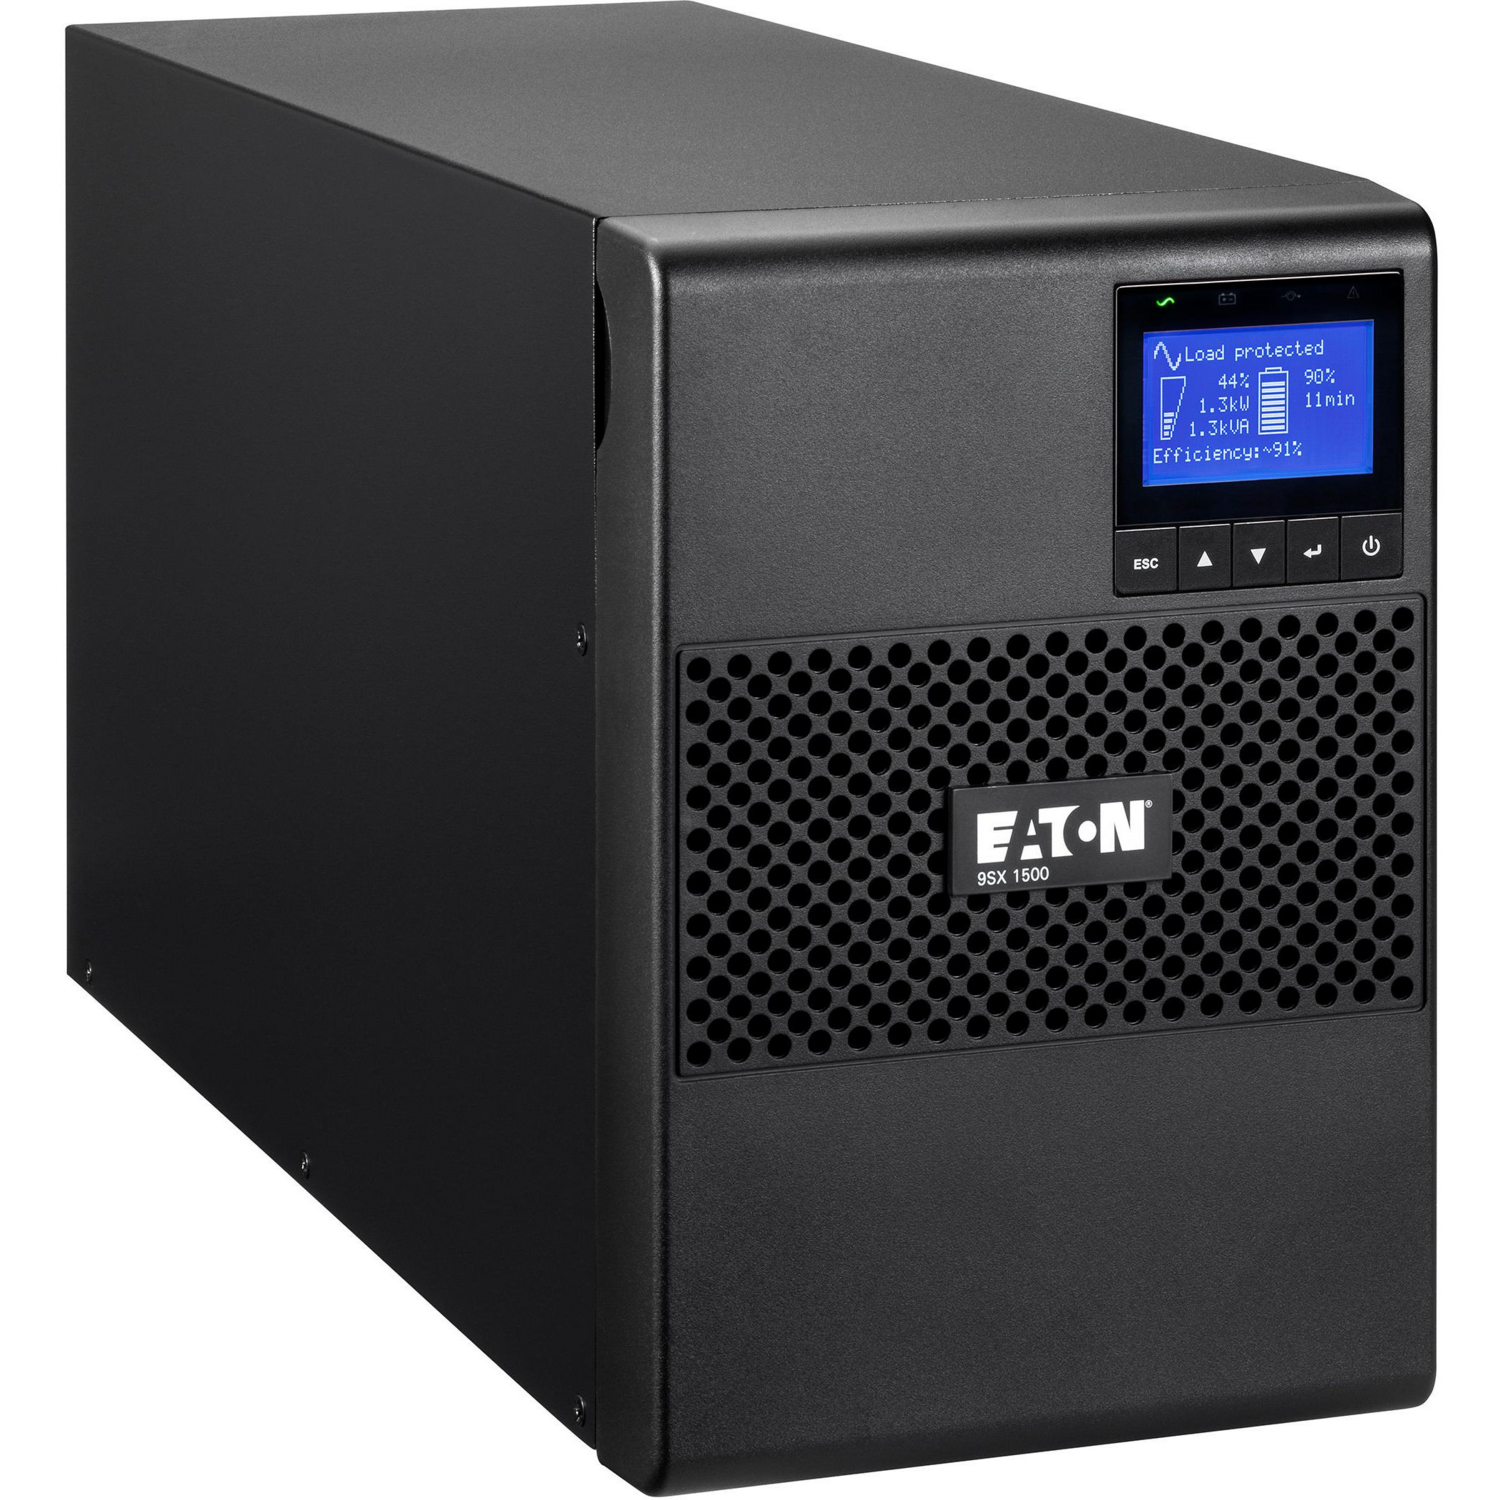 ИБП Eaton 9SX, 1500VA/1350W, LCD, USB, RS232, 6xC13 (9SX1500I) фото 